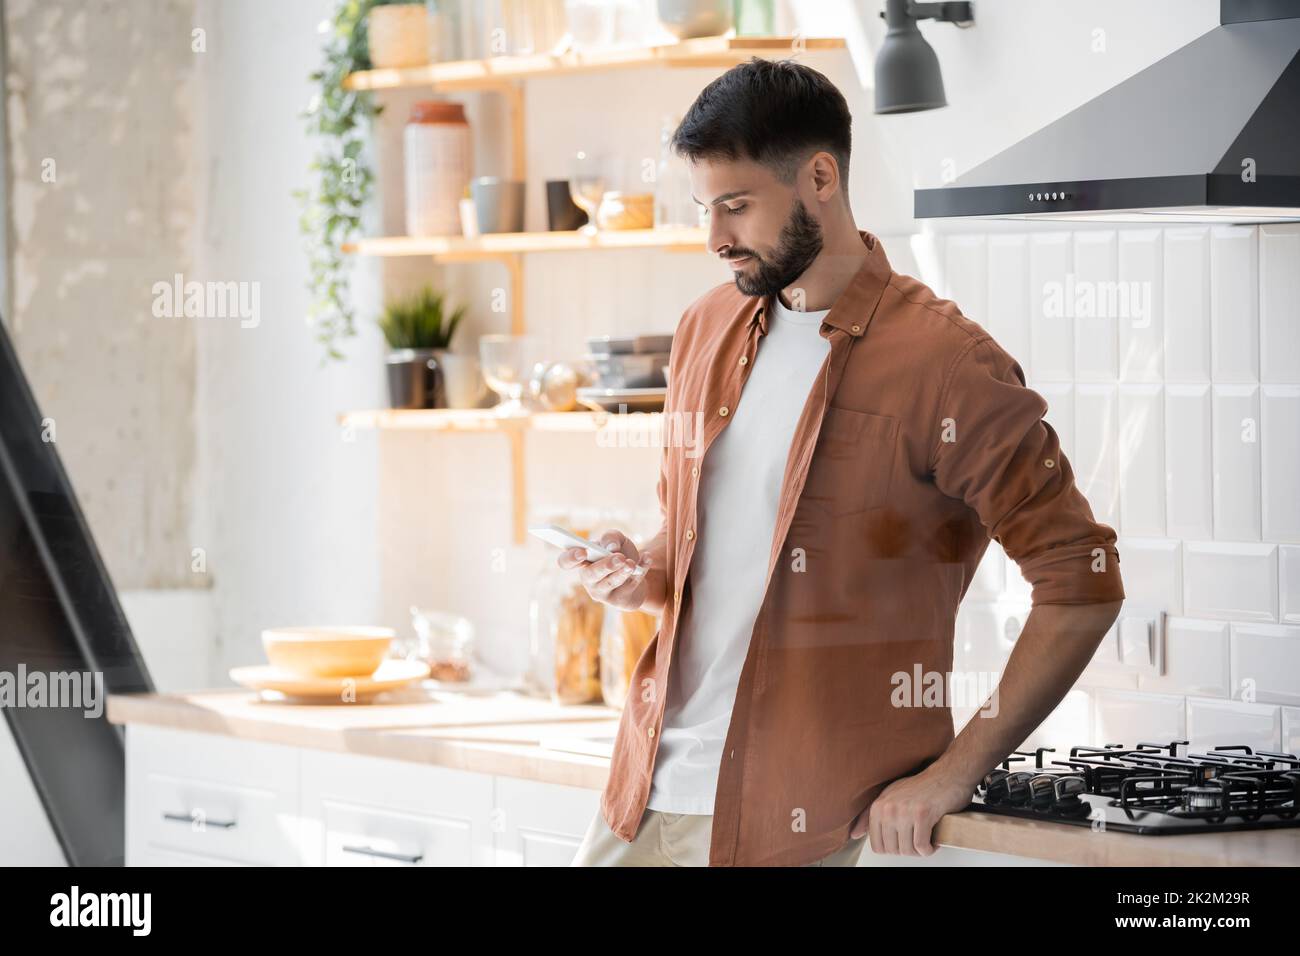 mensaje de hombre barbudo en el smartphone mientras se encuentra cerca de la cocina, imagen de archivo Foto de stock